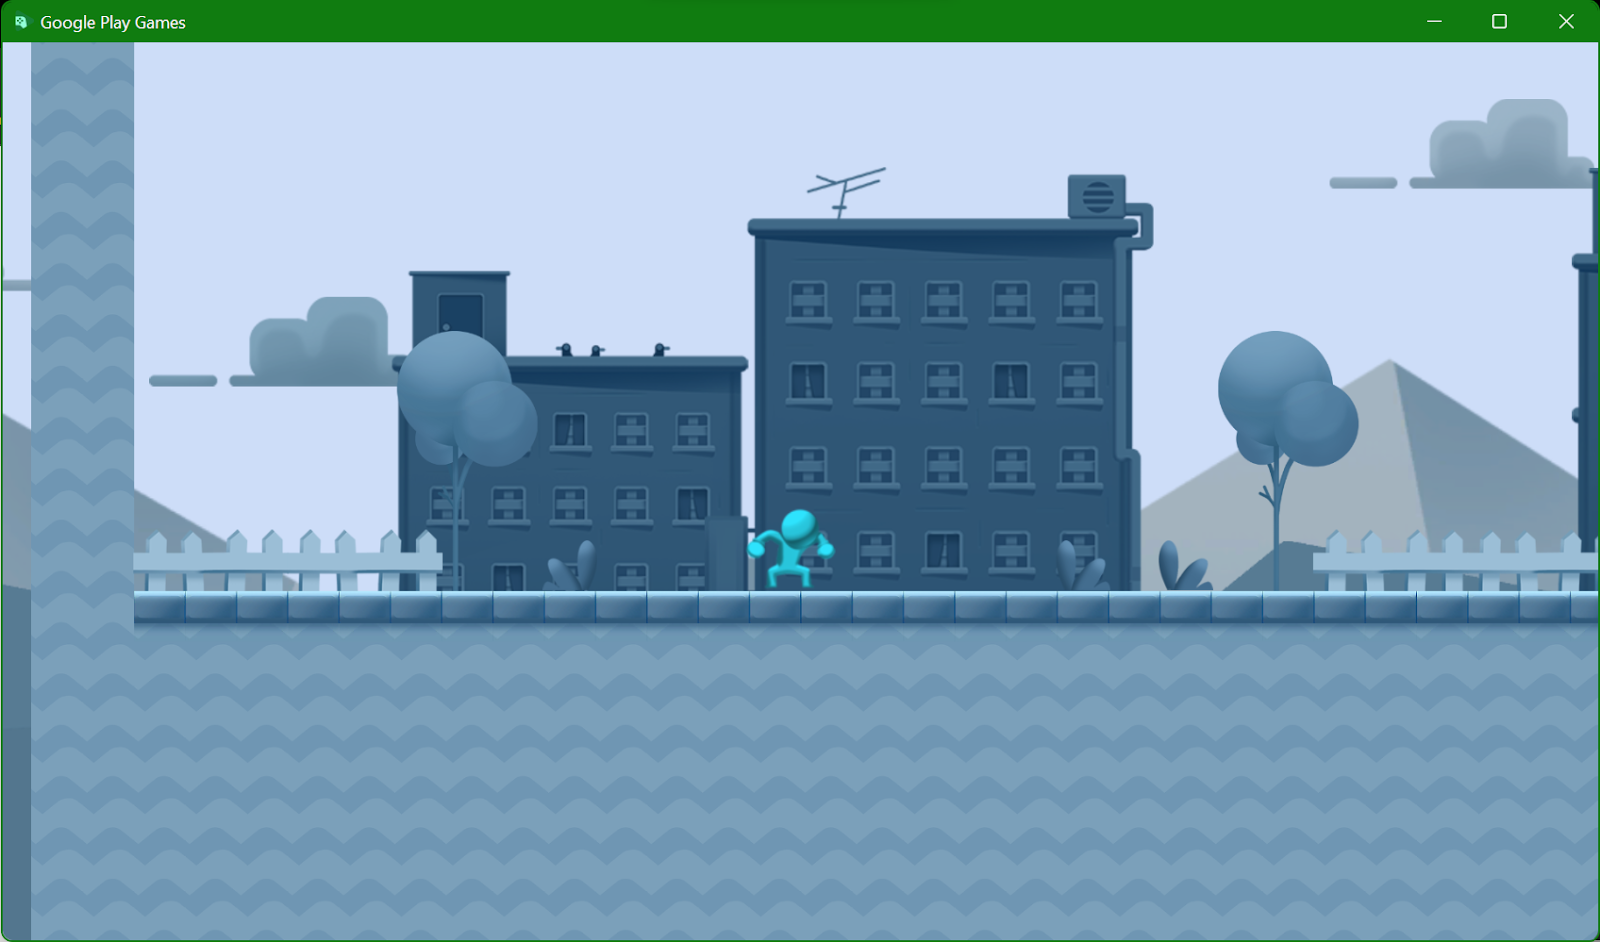 「2D Platformer Microgame」が稼働している Google Play ゲーム エミュレータのスクリーンショット